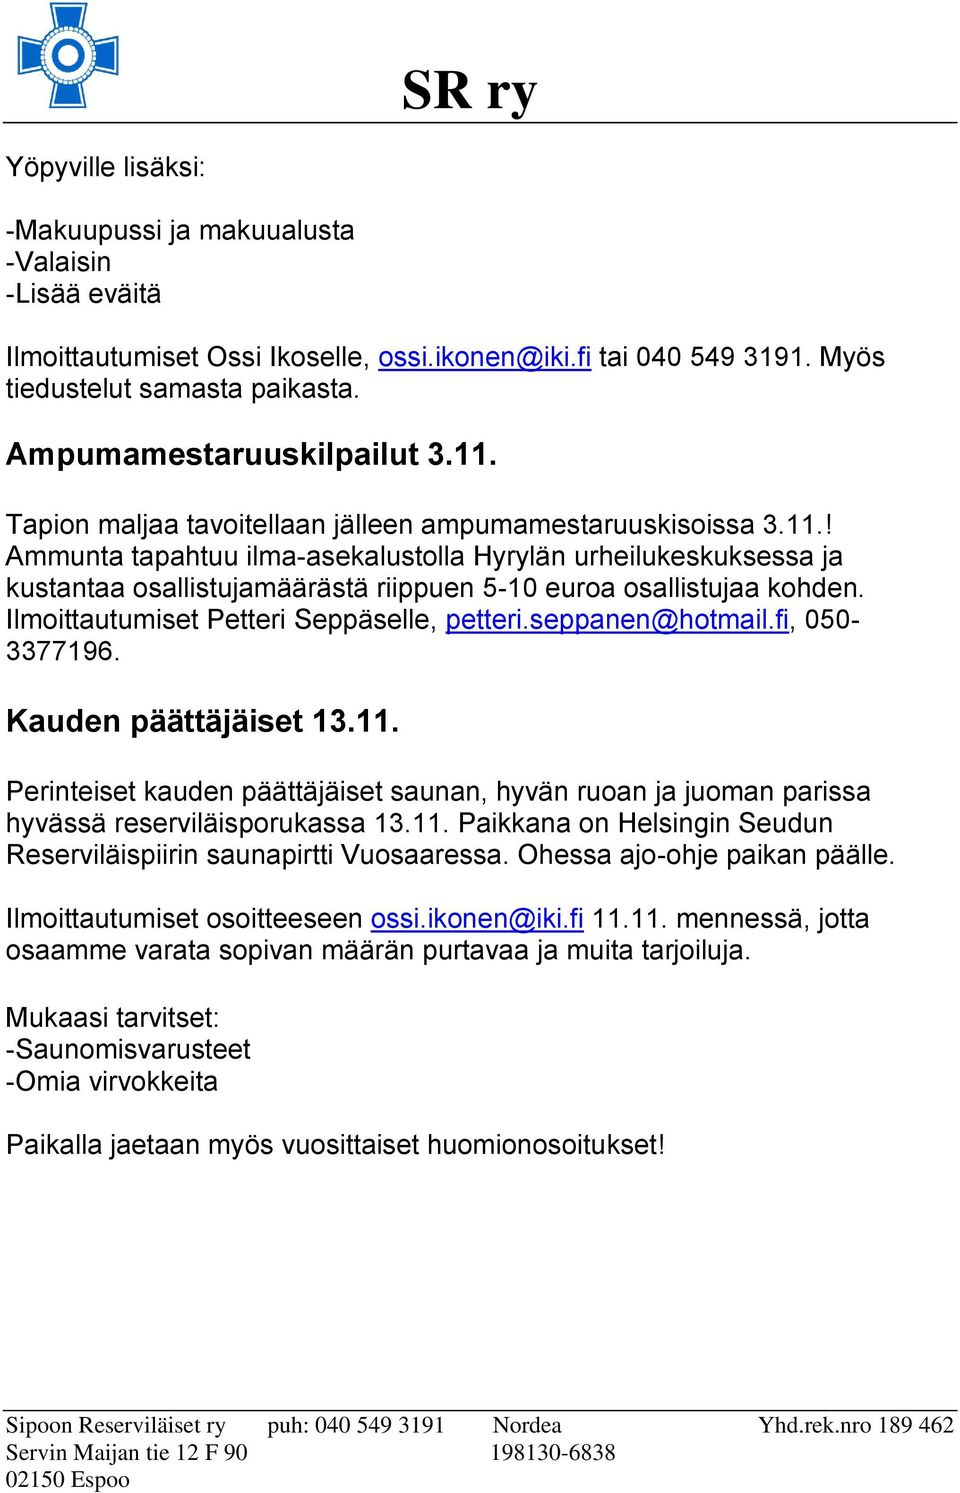 Ilmoittautumiset Petteri Seppäselle, petteri.seppanen@hotmail.fi, 050-3377196. Kauden päättäjäiset 13.11.